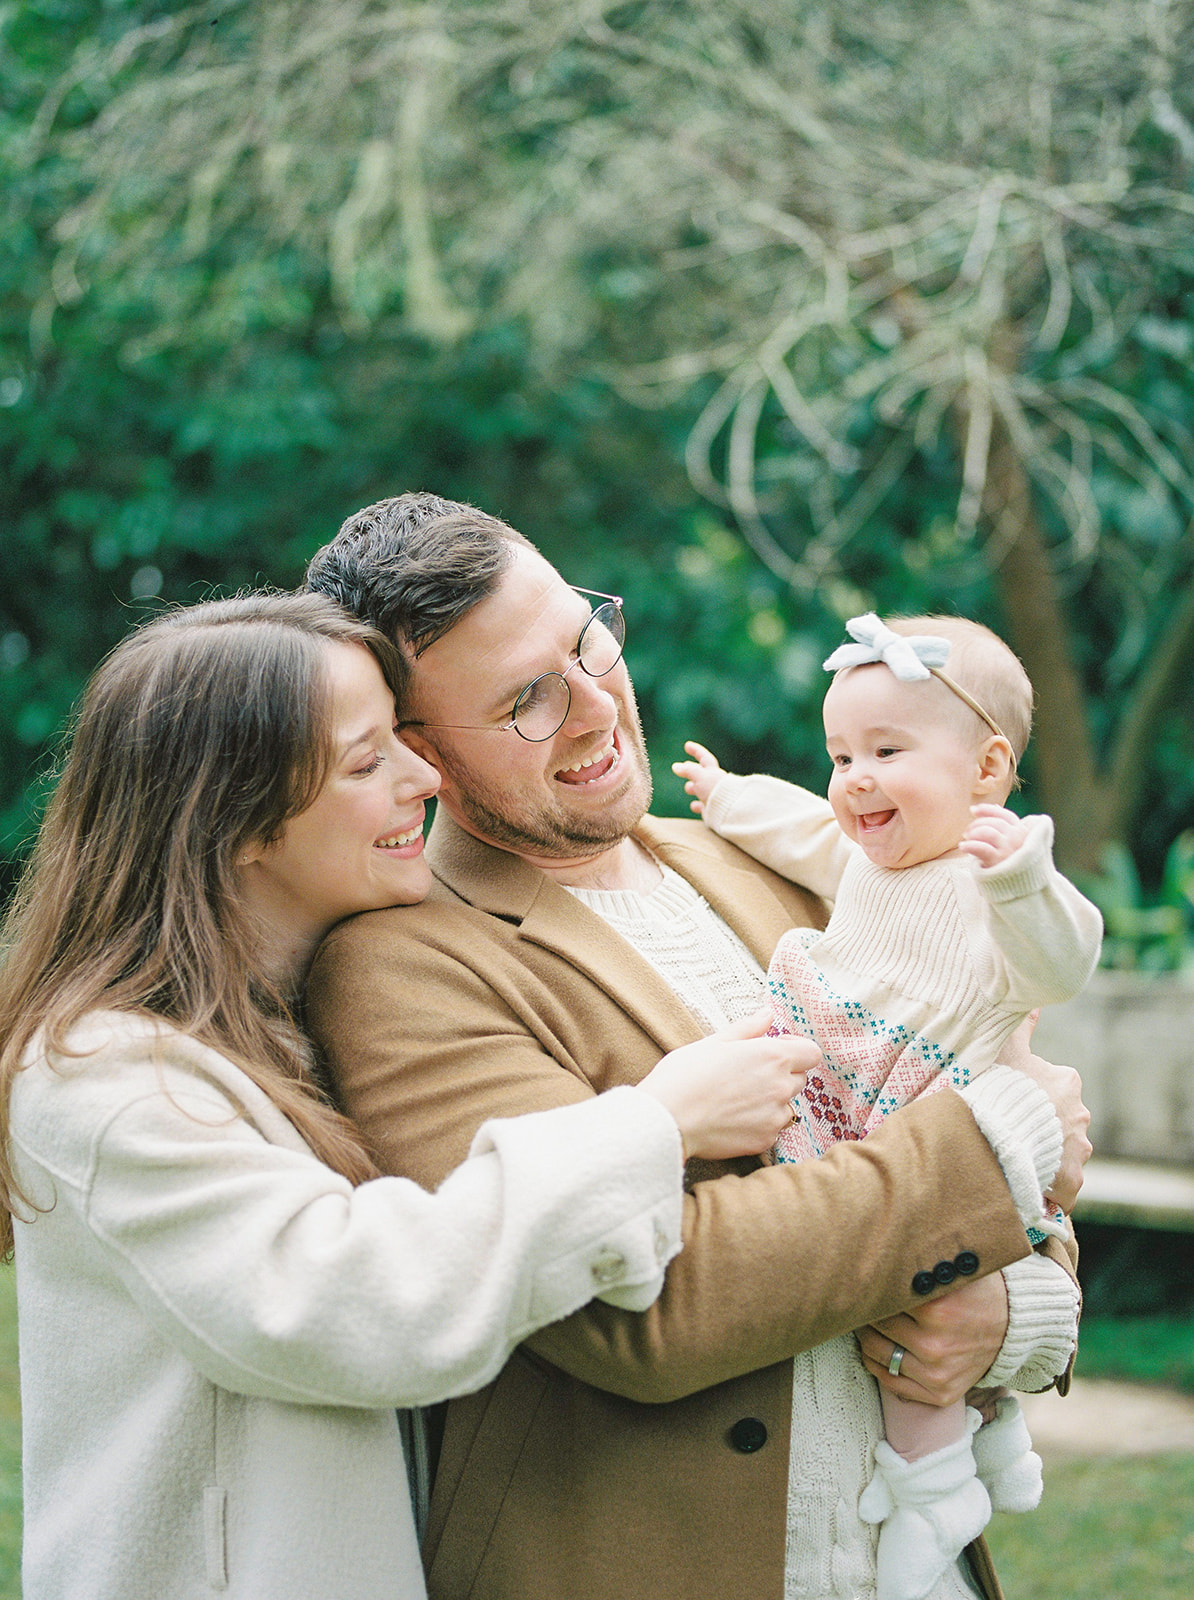 A family holding baby in San Francisco garden